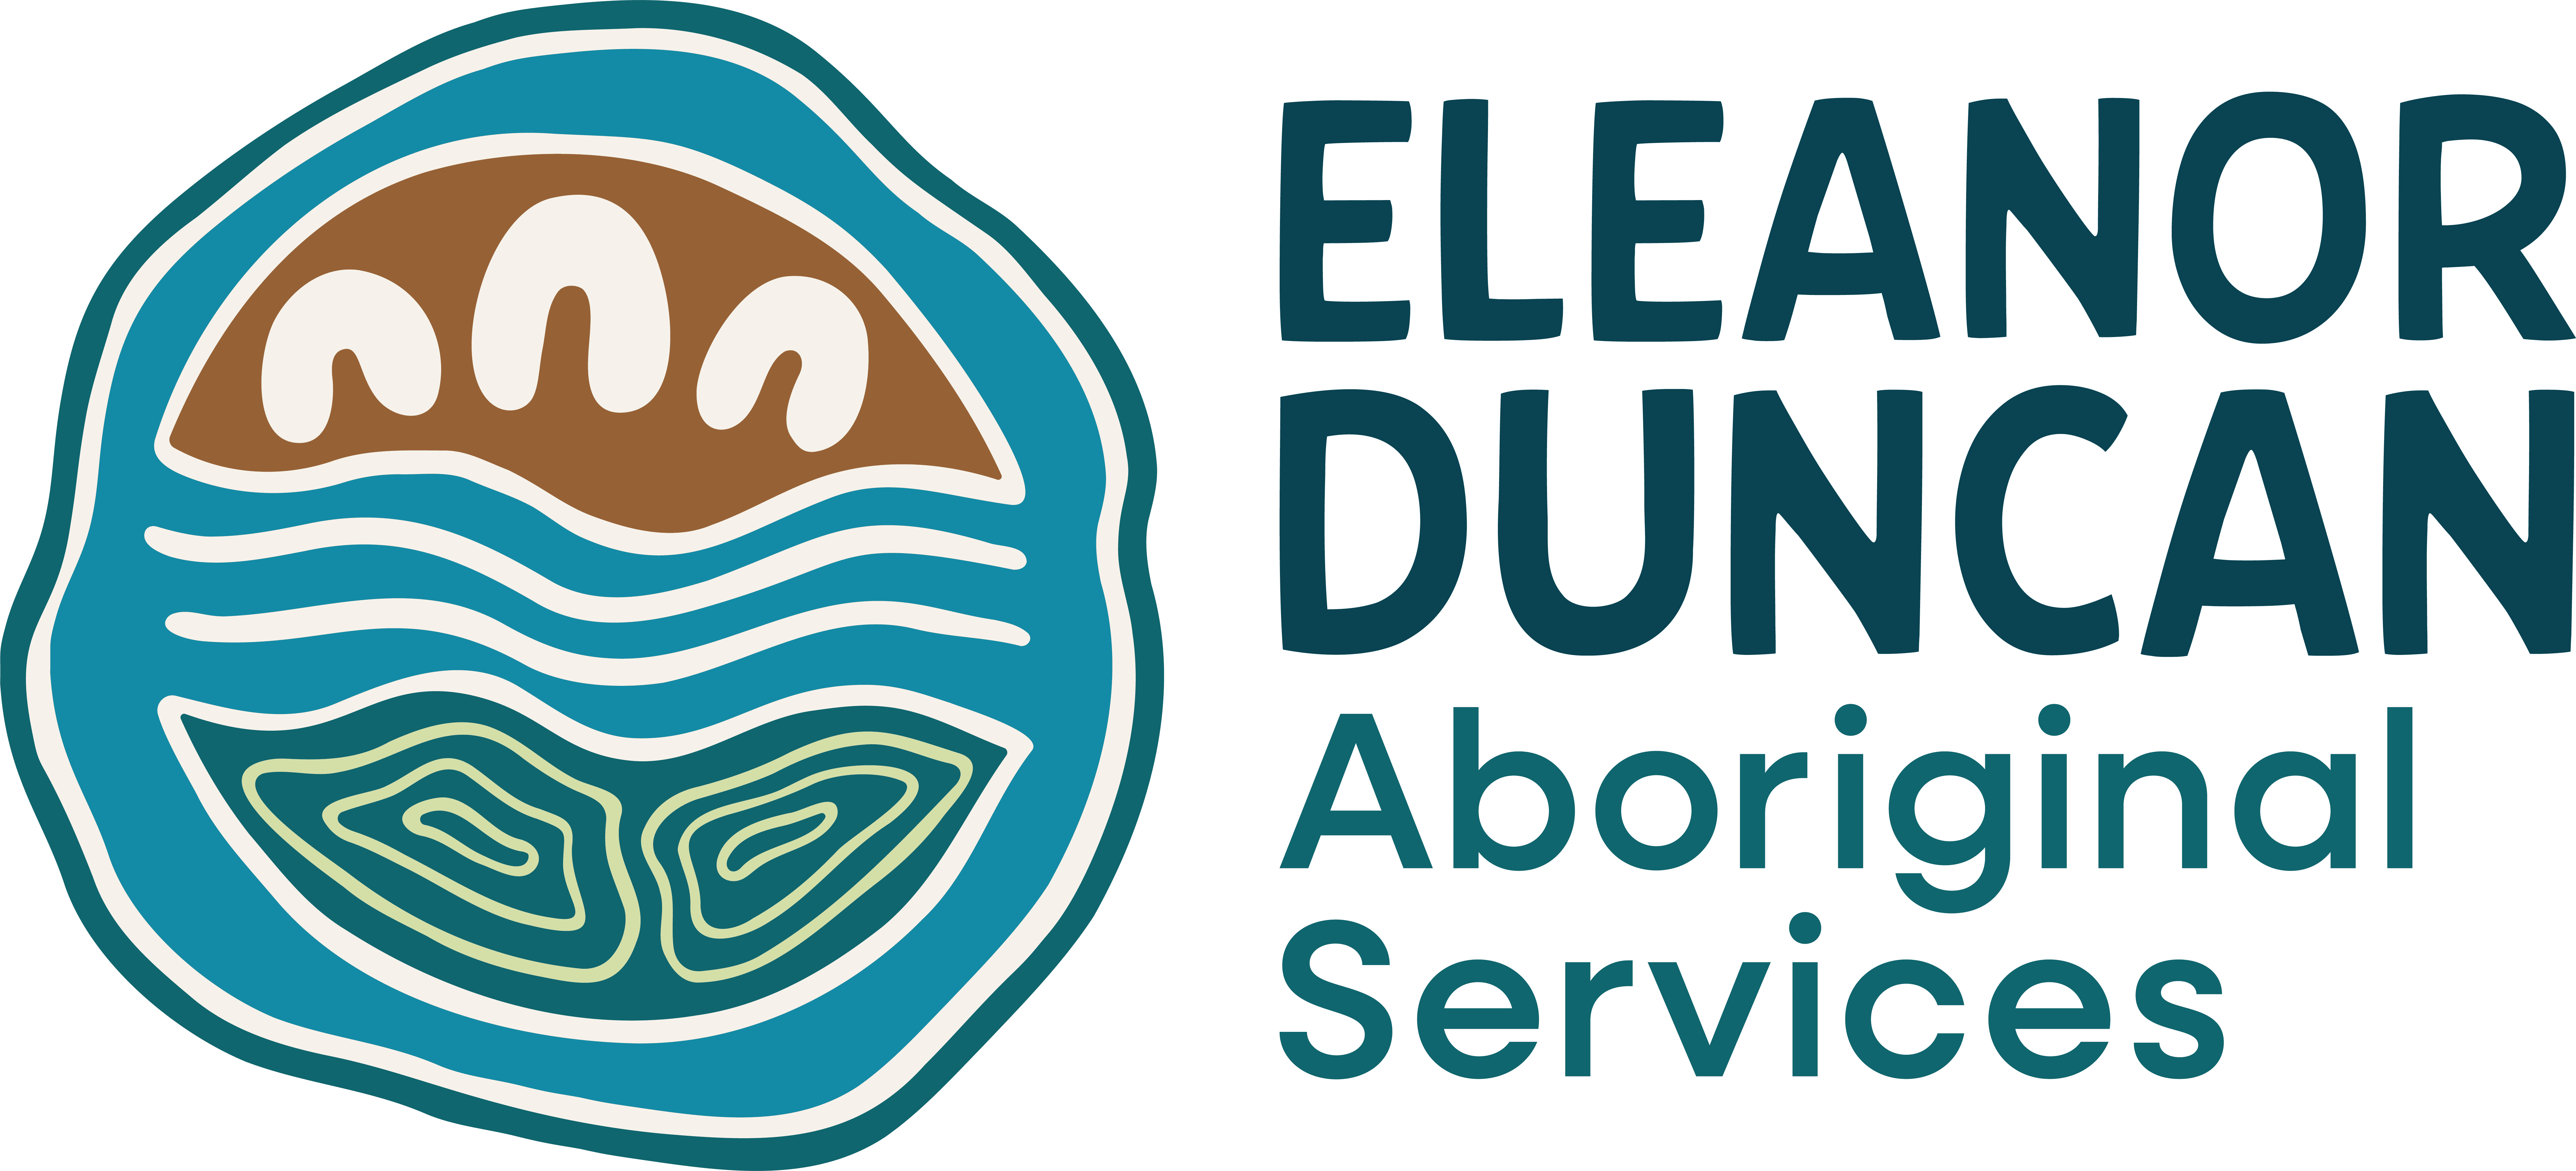 Eleanor Duncan Aborigial Services Ltd